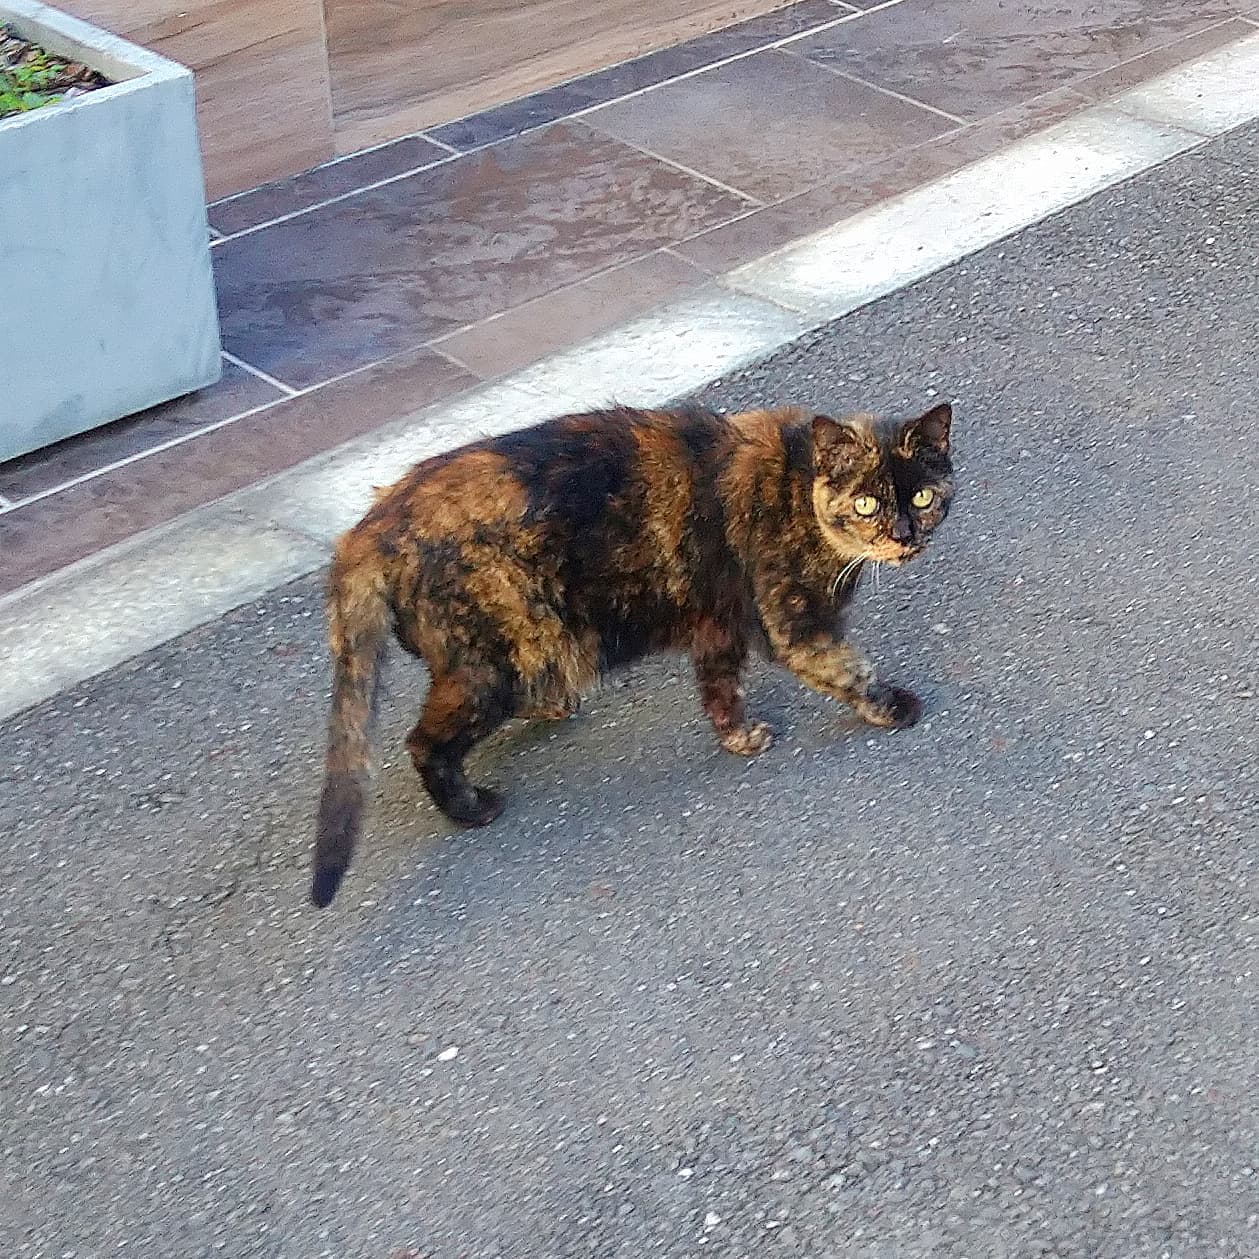 武蔵小山の猫図鑑不思議な柄の猫でございますな。#武蔵小山 #武蔵小山猫 #猫 #cat #猫図鑑 #武蔵小山の猫図鑑